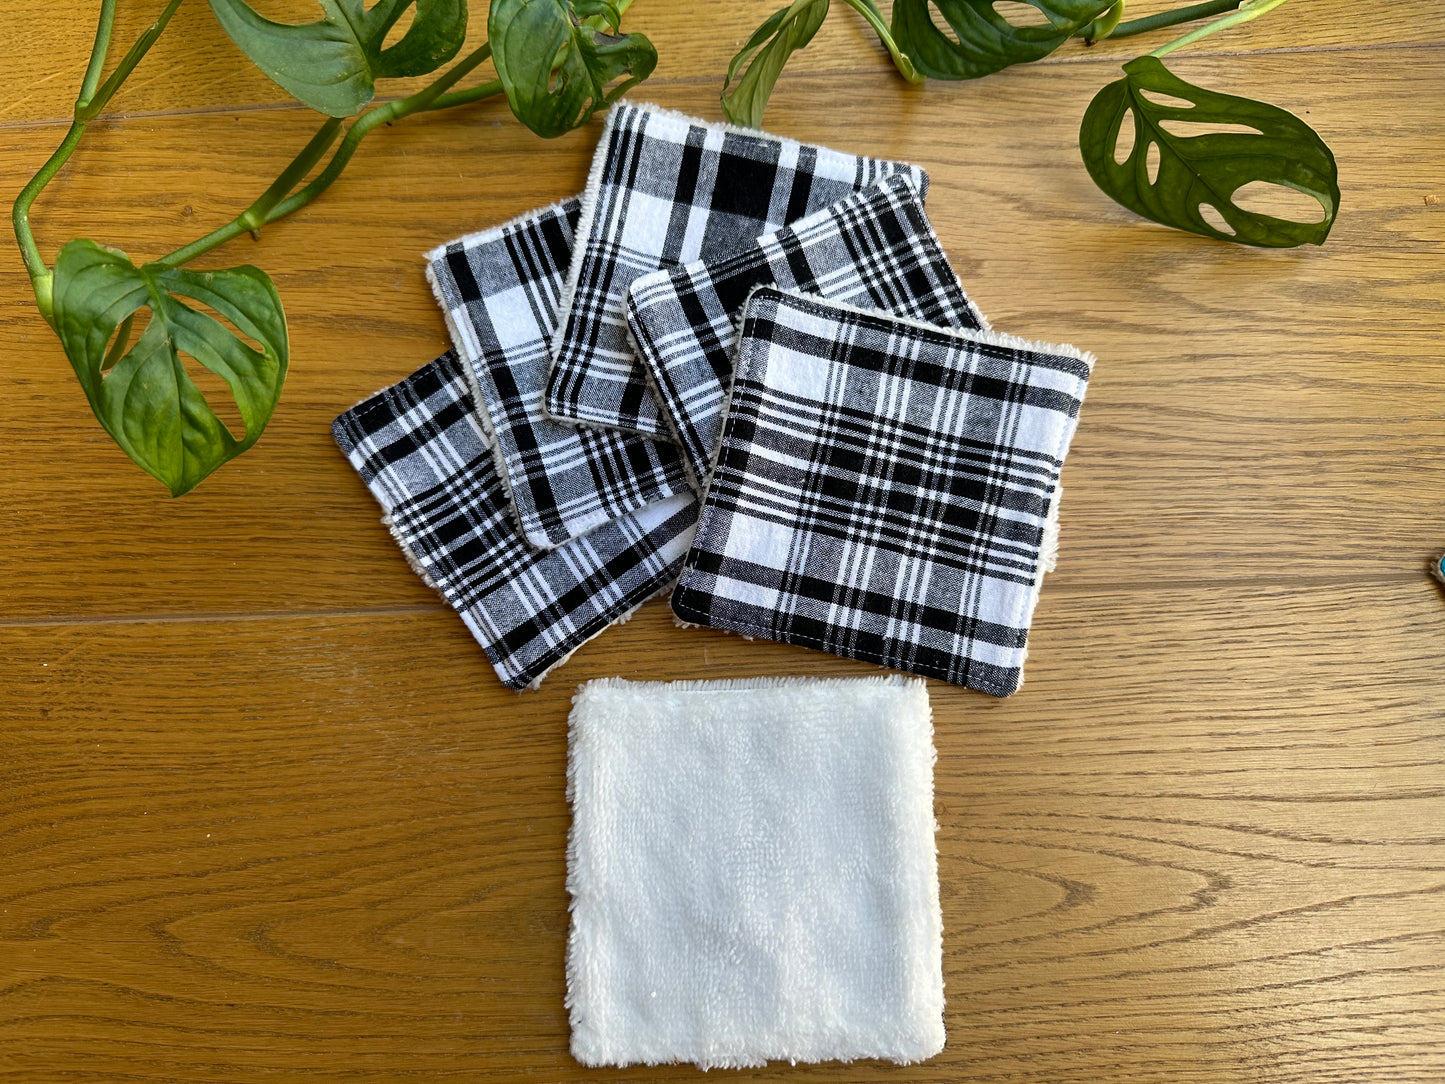 Lingettes lavables "Corossol" en madras noir et blanc